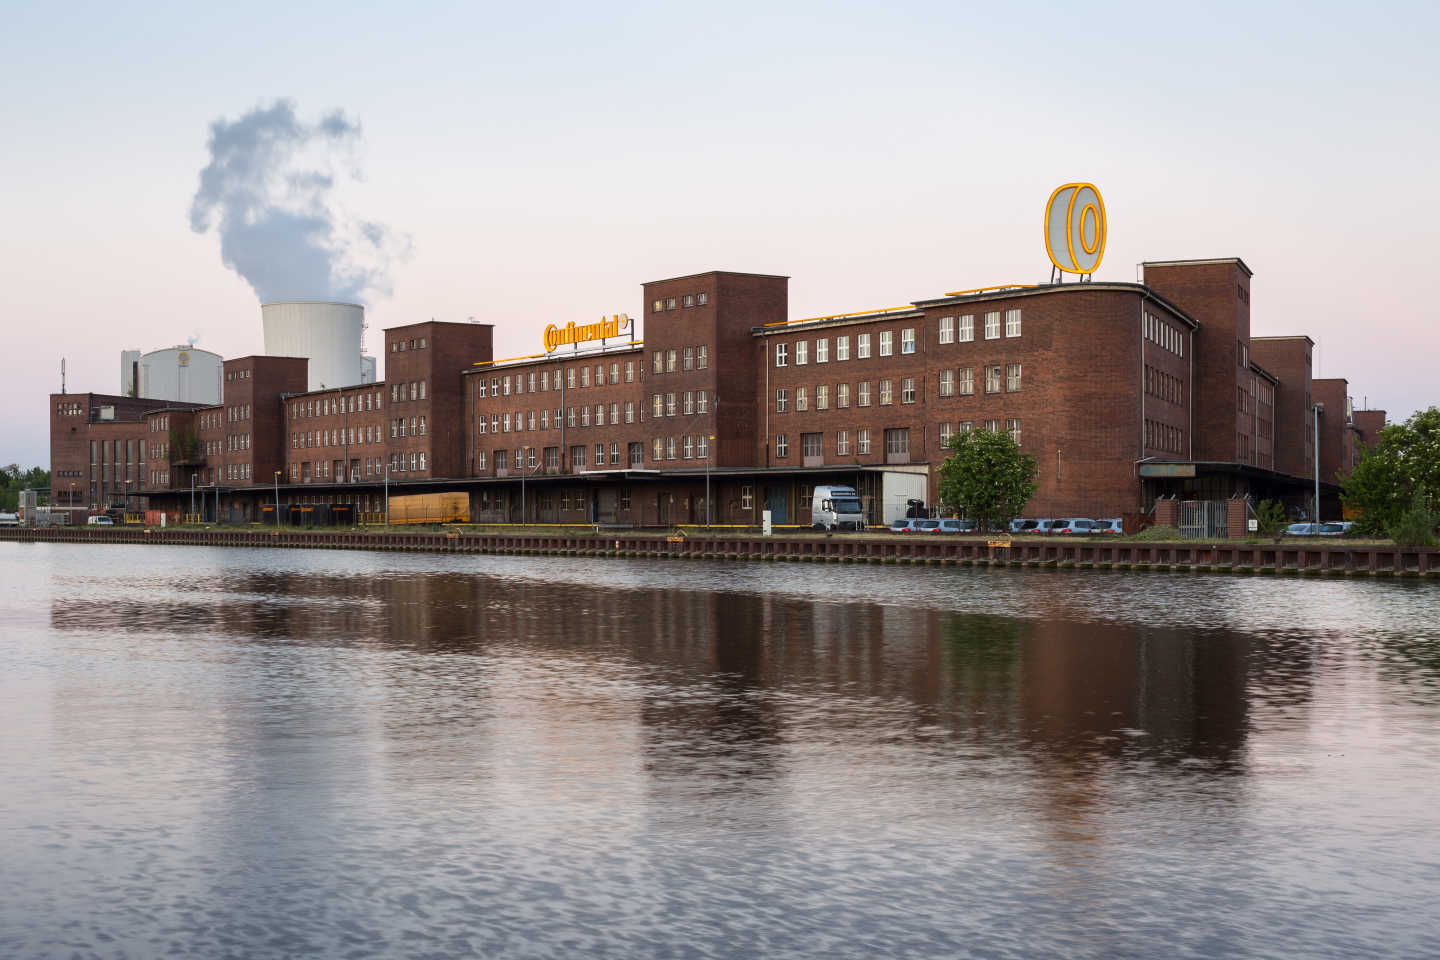 L'usine de pneus Continental à Hanovre, sur le Mittellandkanal, est dans la même veine architecturale...